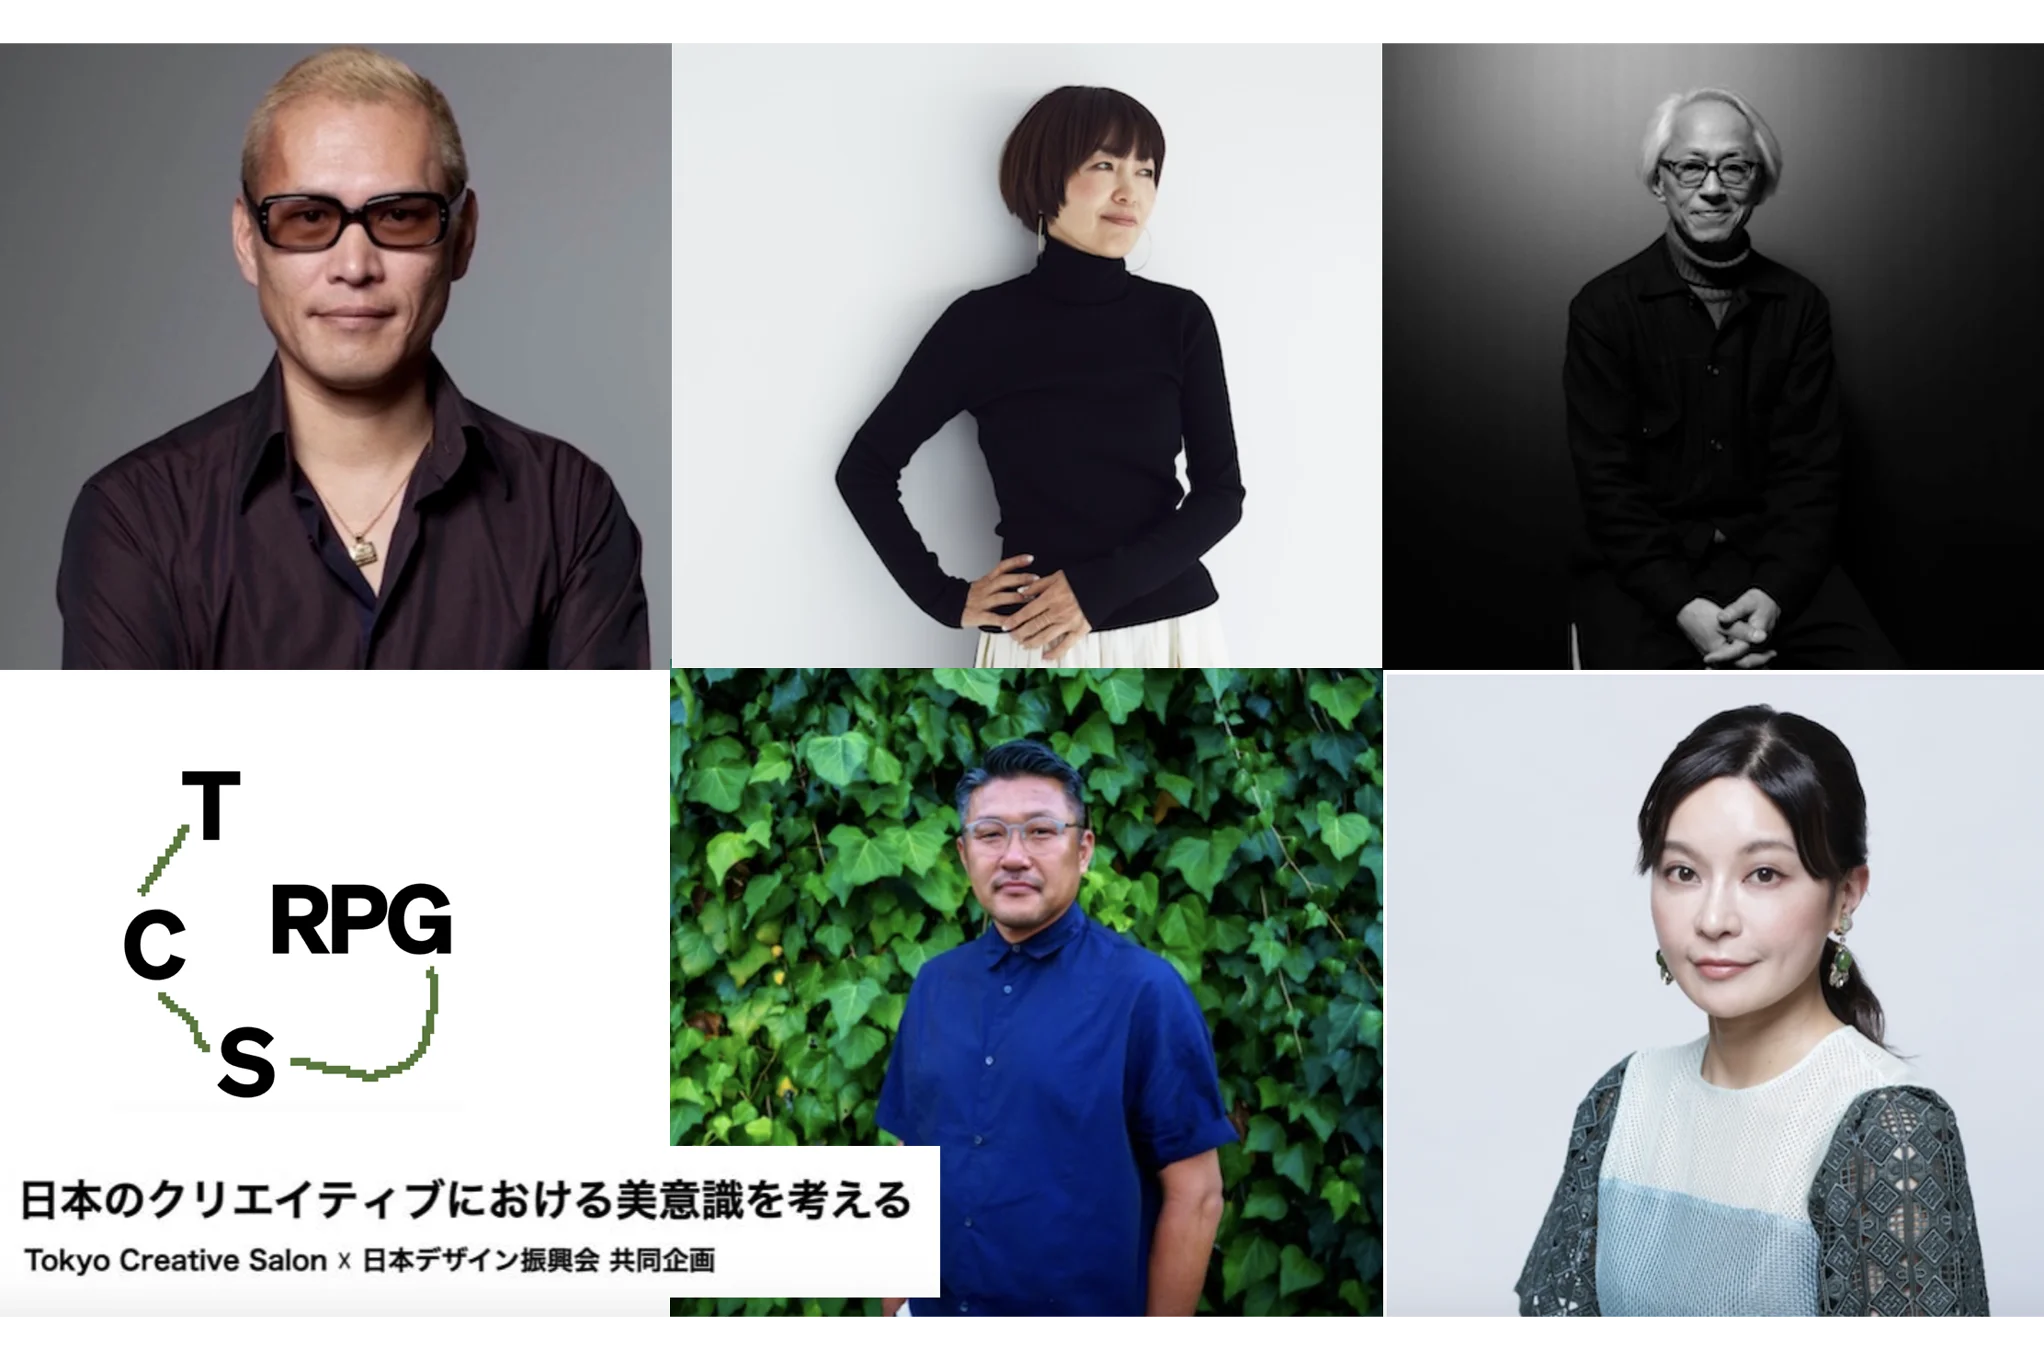 『日本のクリエイティブにおける美意識を考える』トークイベント